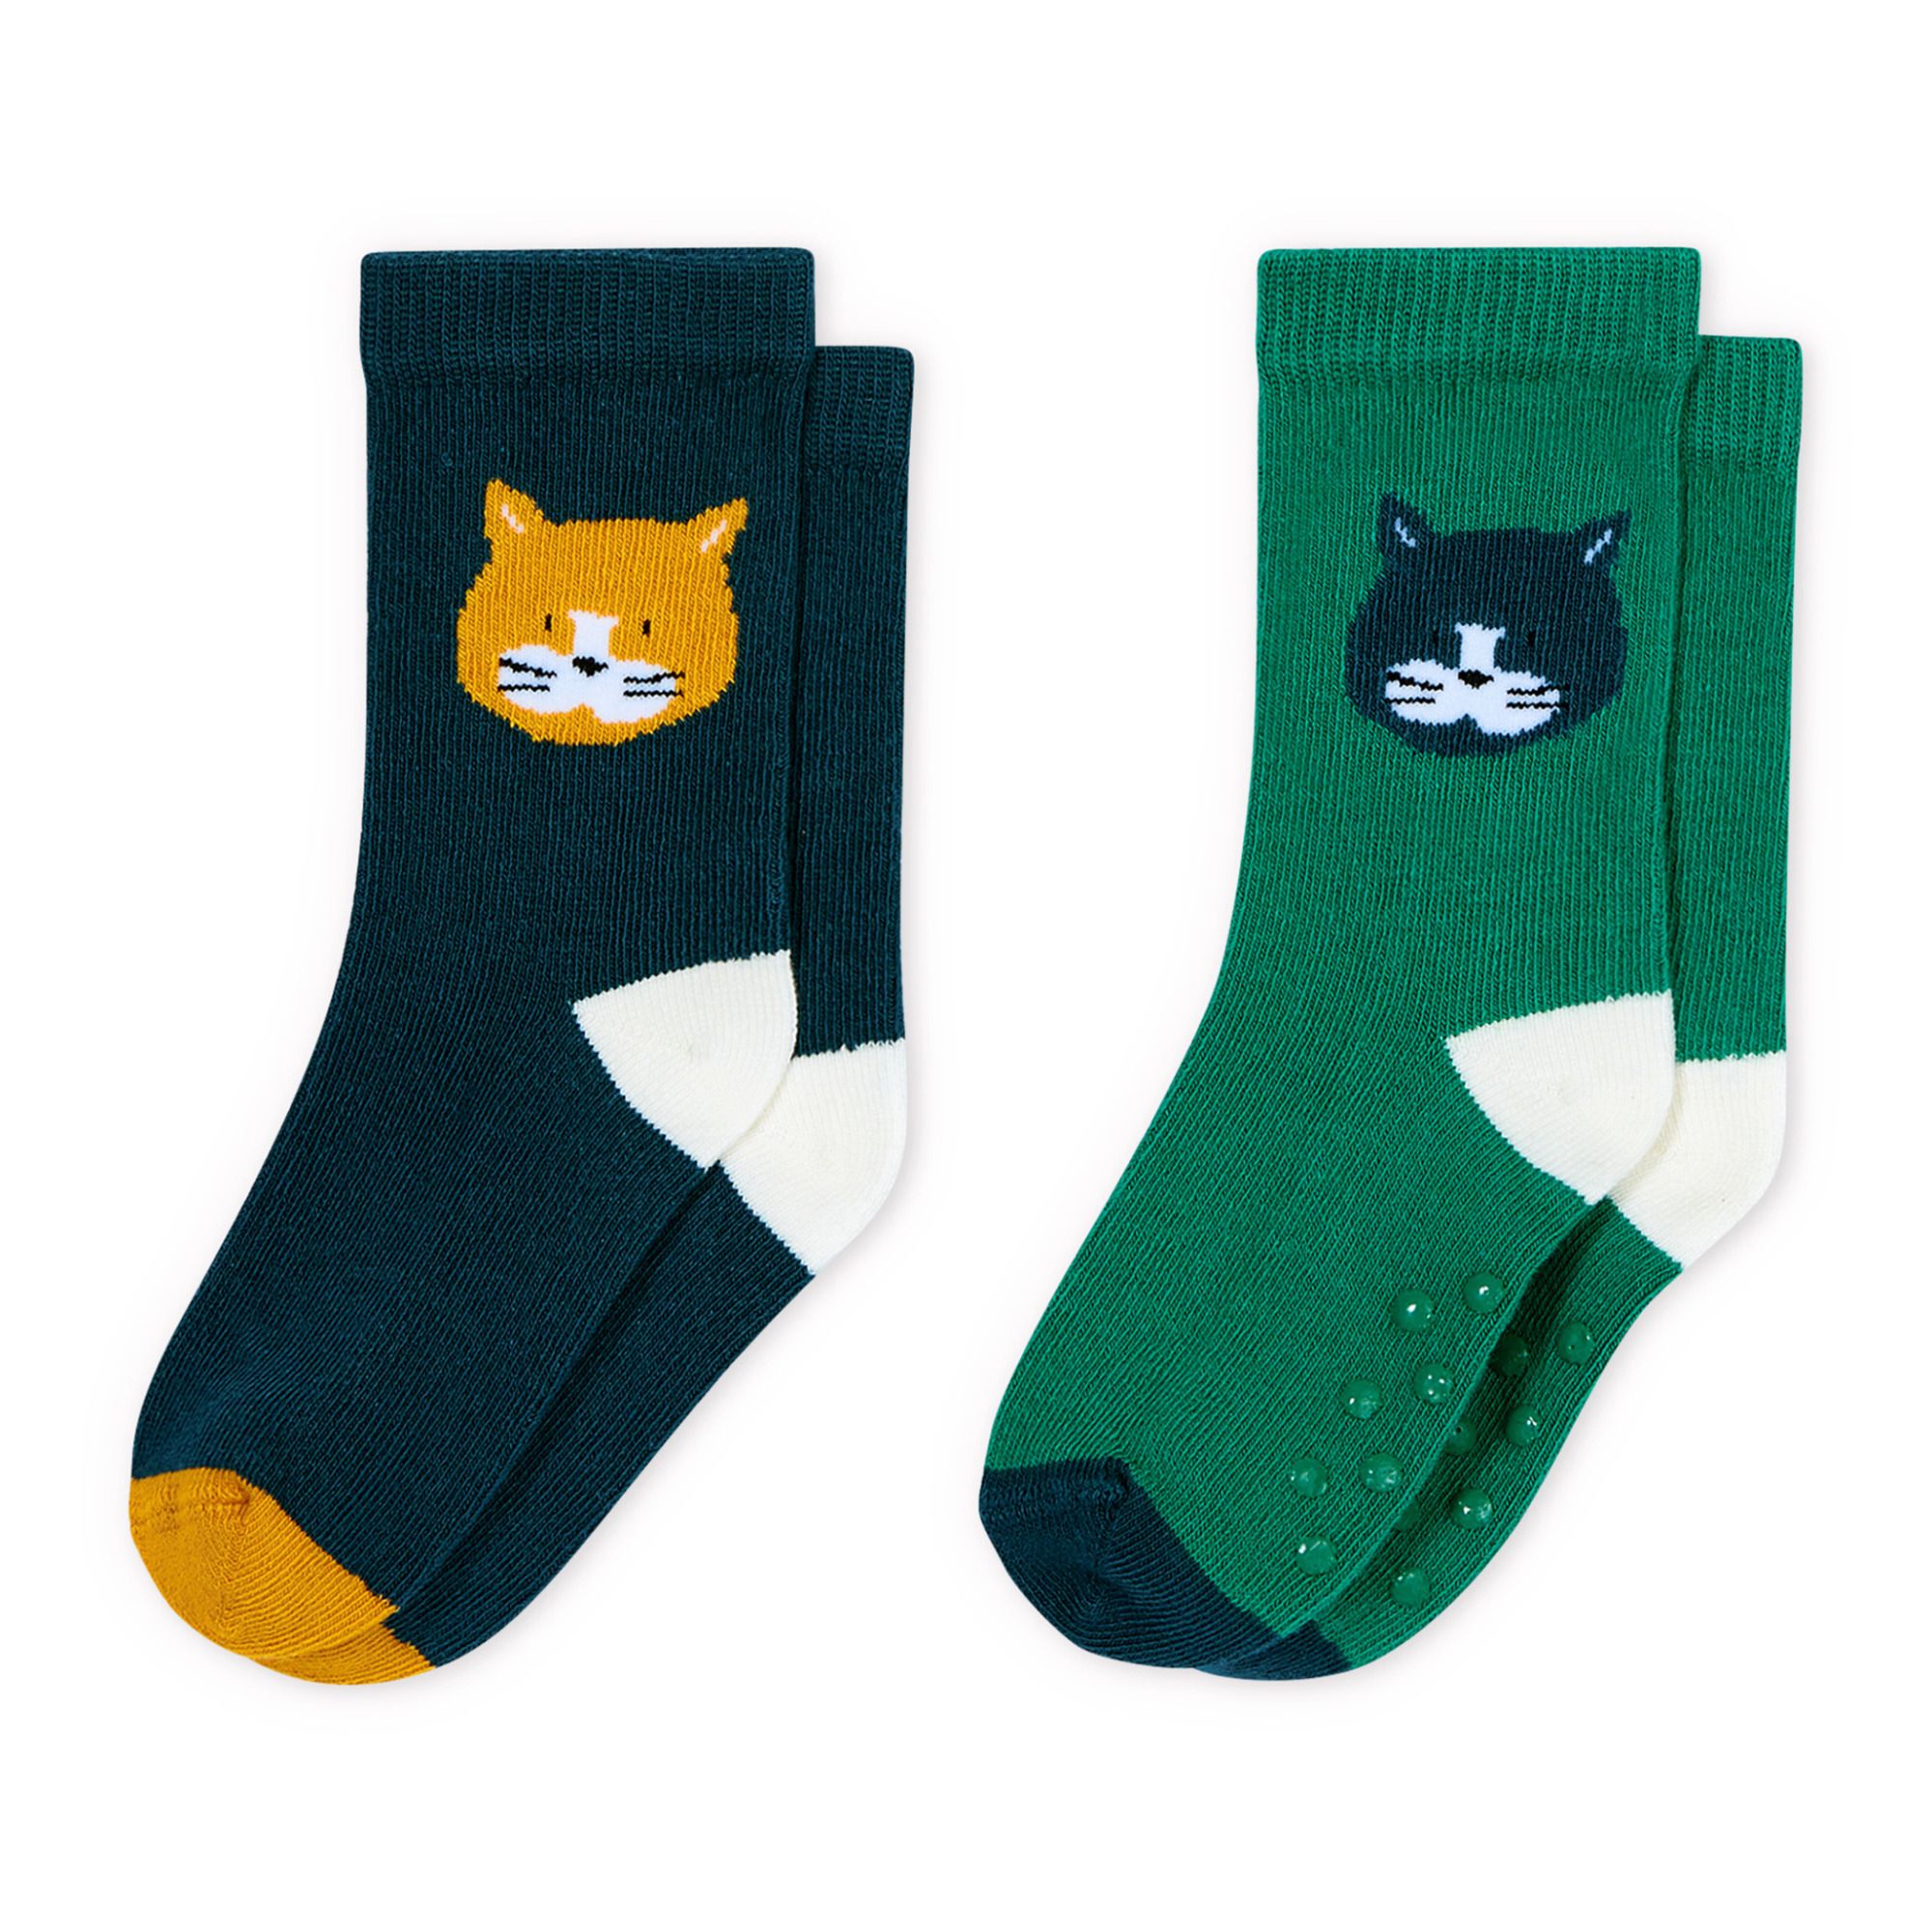 Lot de 5 paires de chaussettes antidérapantes - Vert foncé/vert - ENFANT